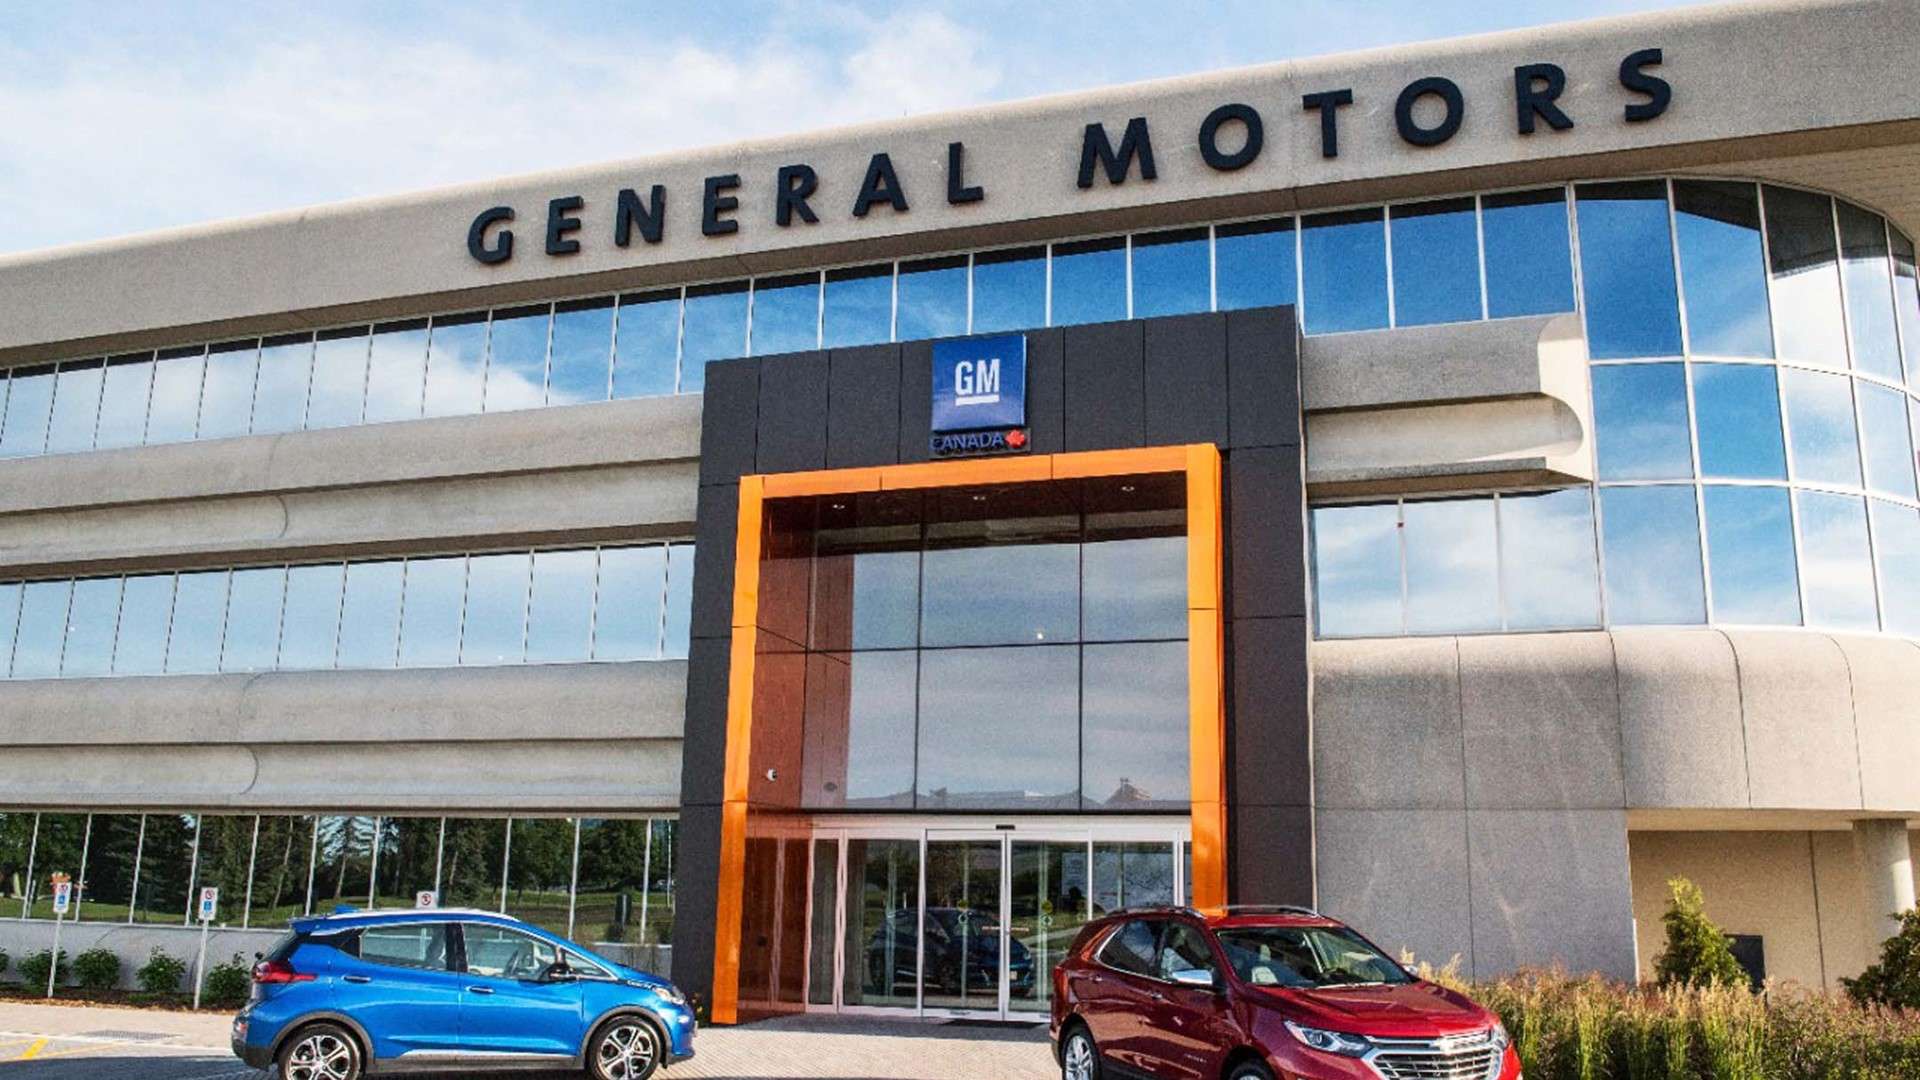 General Motors откладывает отказ от ДВС